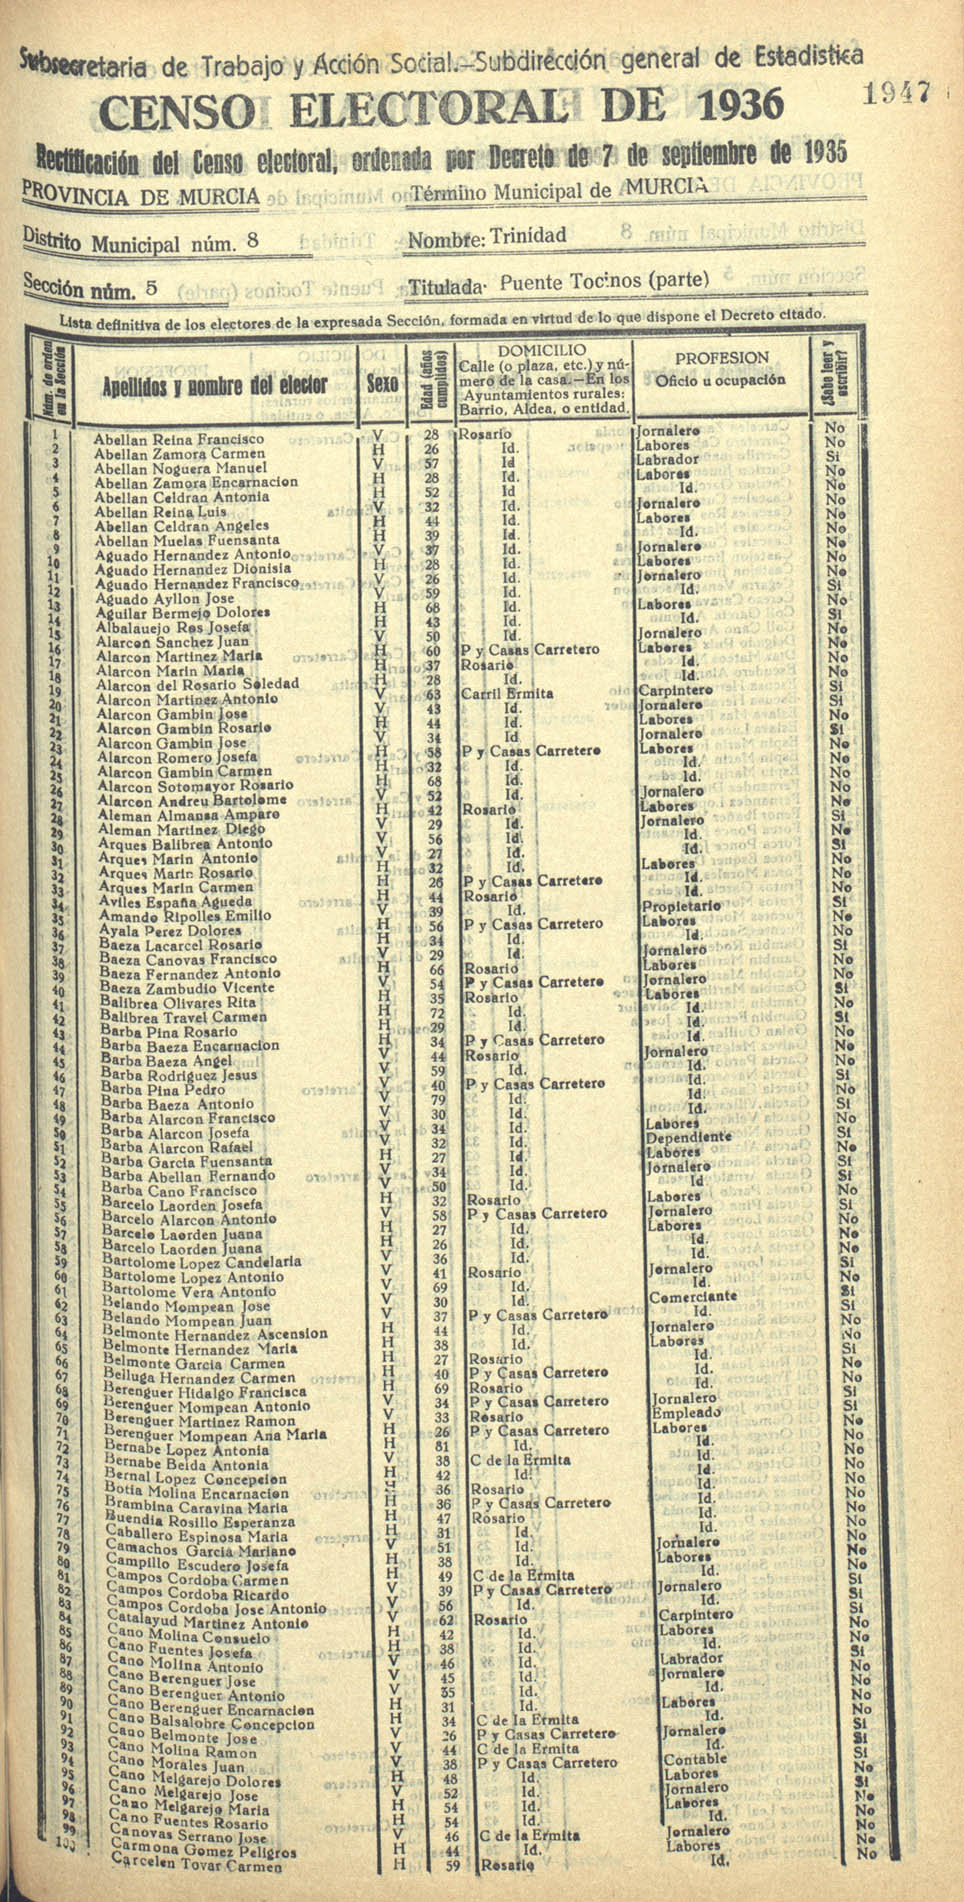 Censo electoral provincial de 1936. Murcia. Distrito 8º, Trinidad. Sección 5ª, Puente Tocinos (parte)